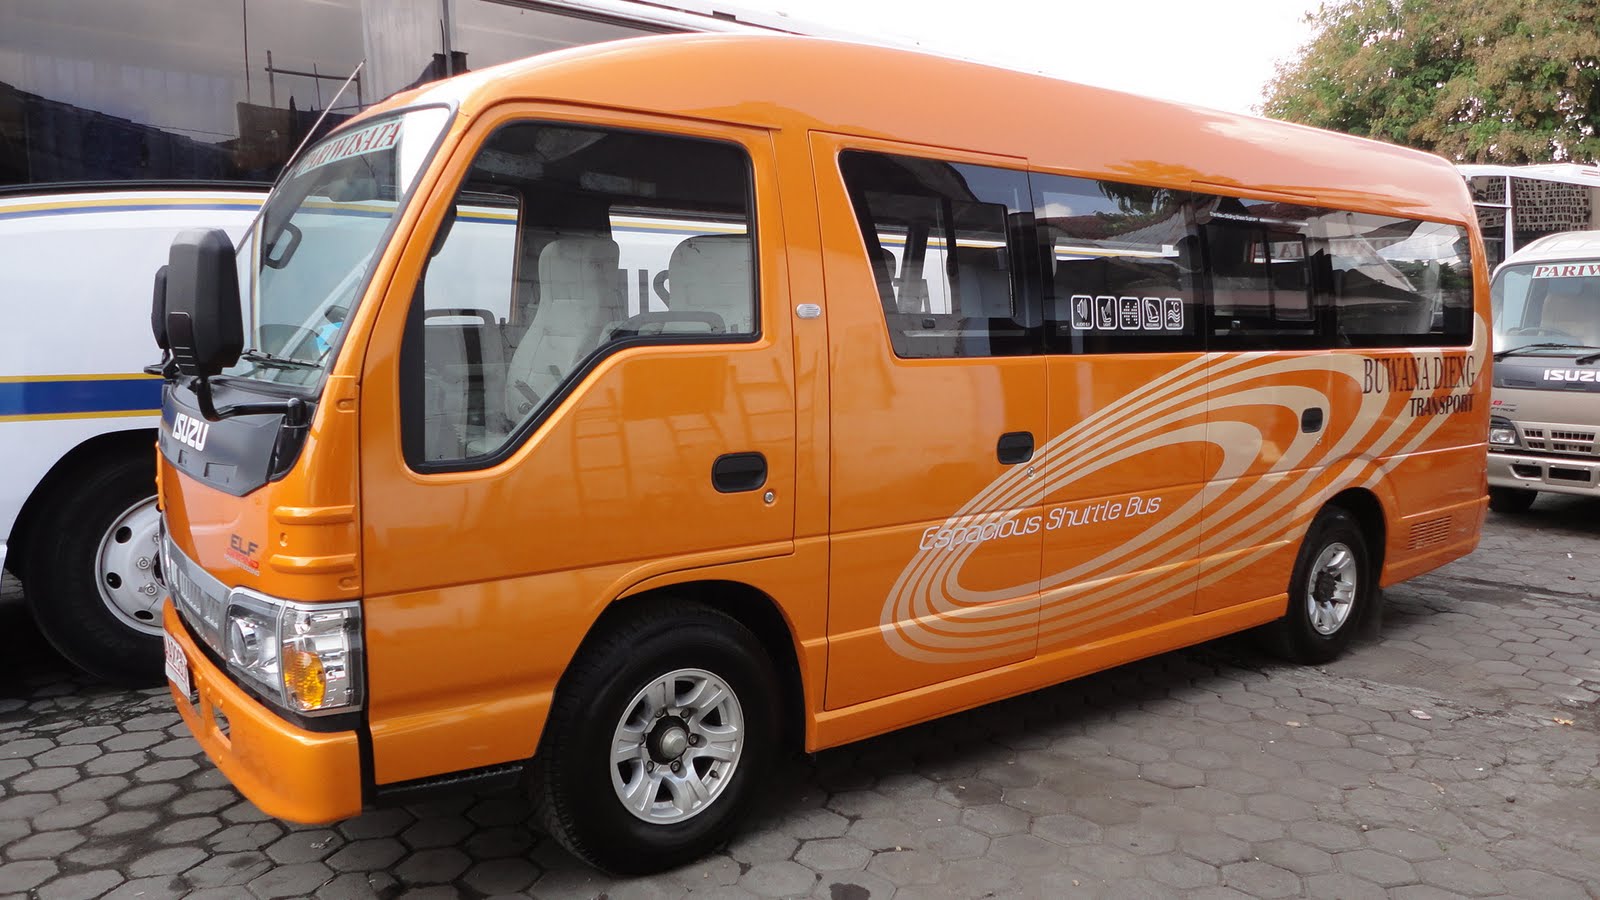 Garasibis PO Buwana Dieng Transport Yogyakarta Bus Pariwisata